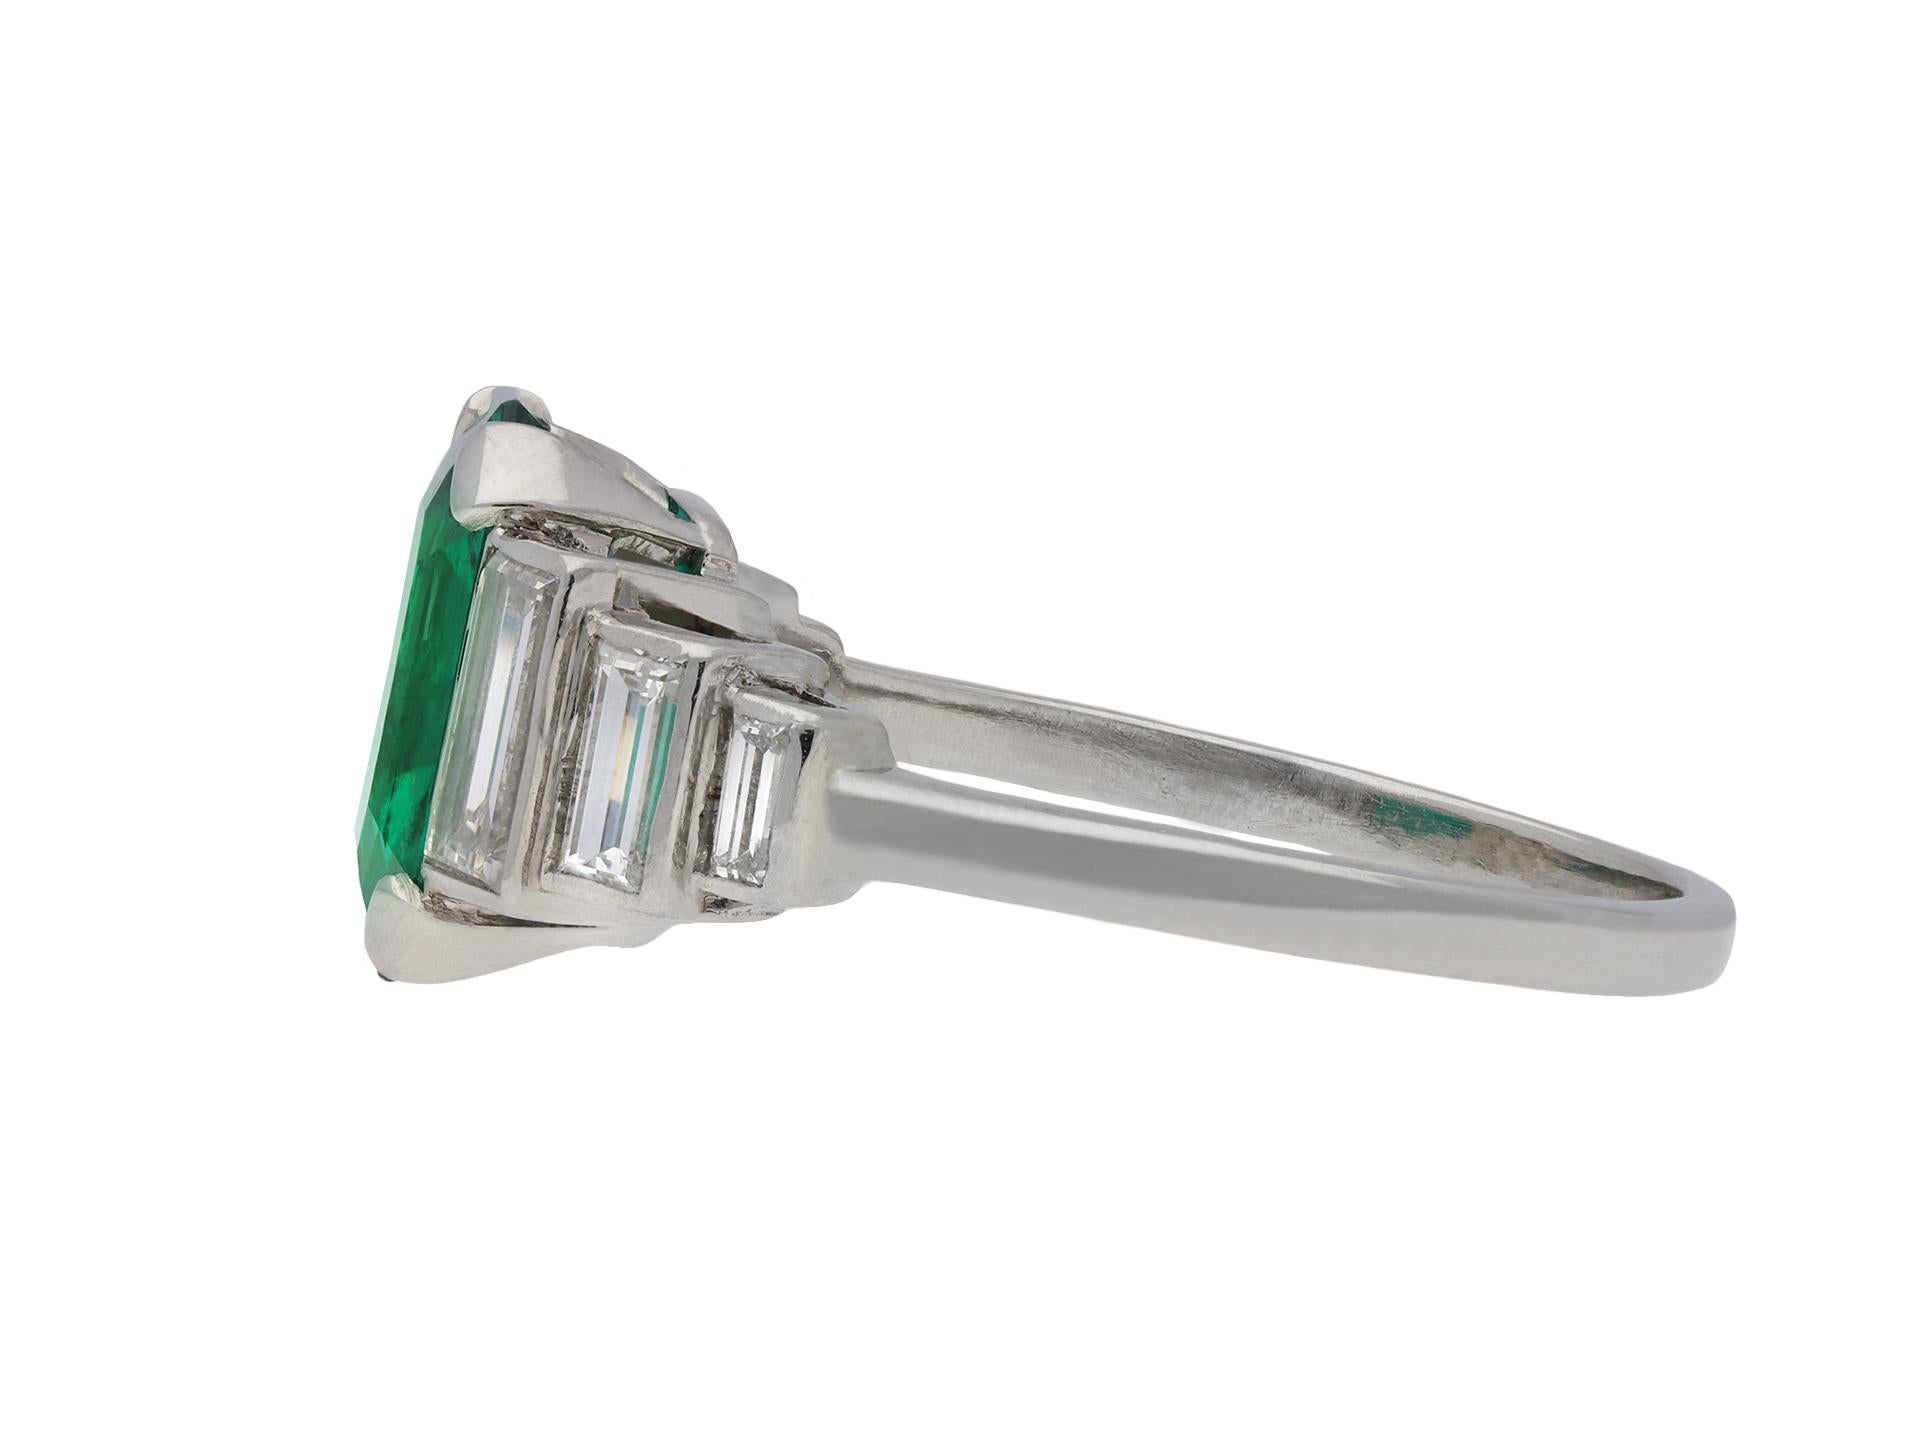 Art-Deco-Ring mit kolumbianischem Smaragd und Diamanten in Solitärform. In der Mitte ein achteckiger, stufenförmig geschliffener natürlicher kolumbianischer Smaragd mit geringfügiger Klarheitsverbesserung in einer offenen Klauenfassung mit einem